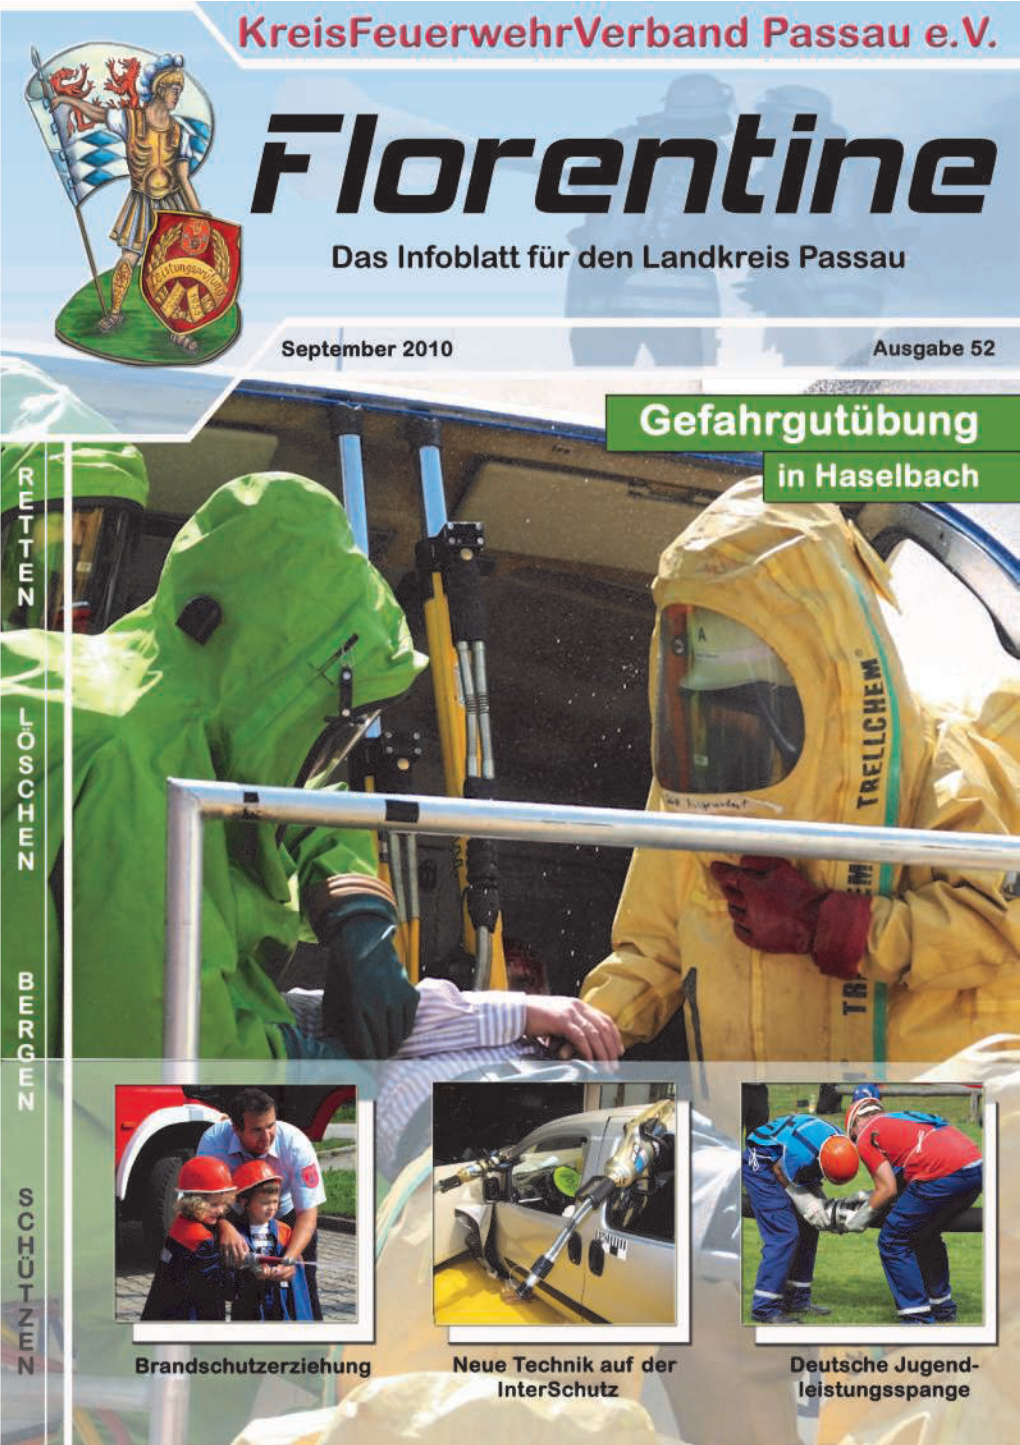 Florentine „Infoblatt“ Kreisfeuerwehrverband- Passau.De Florentine@Kfv-Passau.De